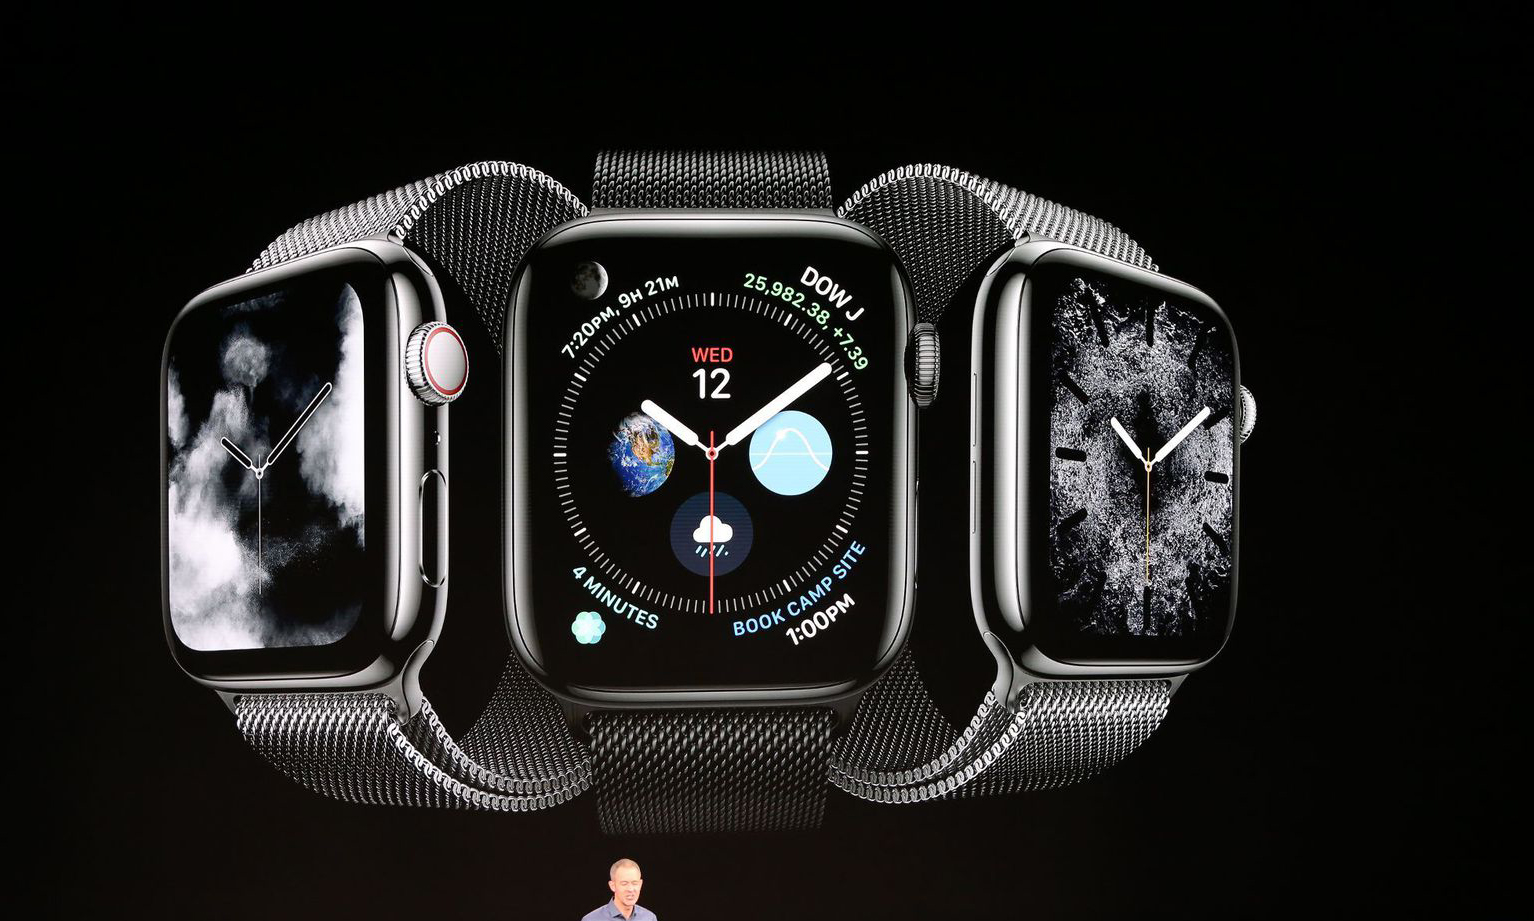 全新尺寸、更大屏幕的 Apple Watch Series 4 发布